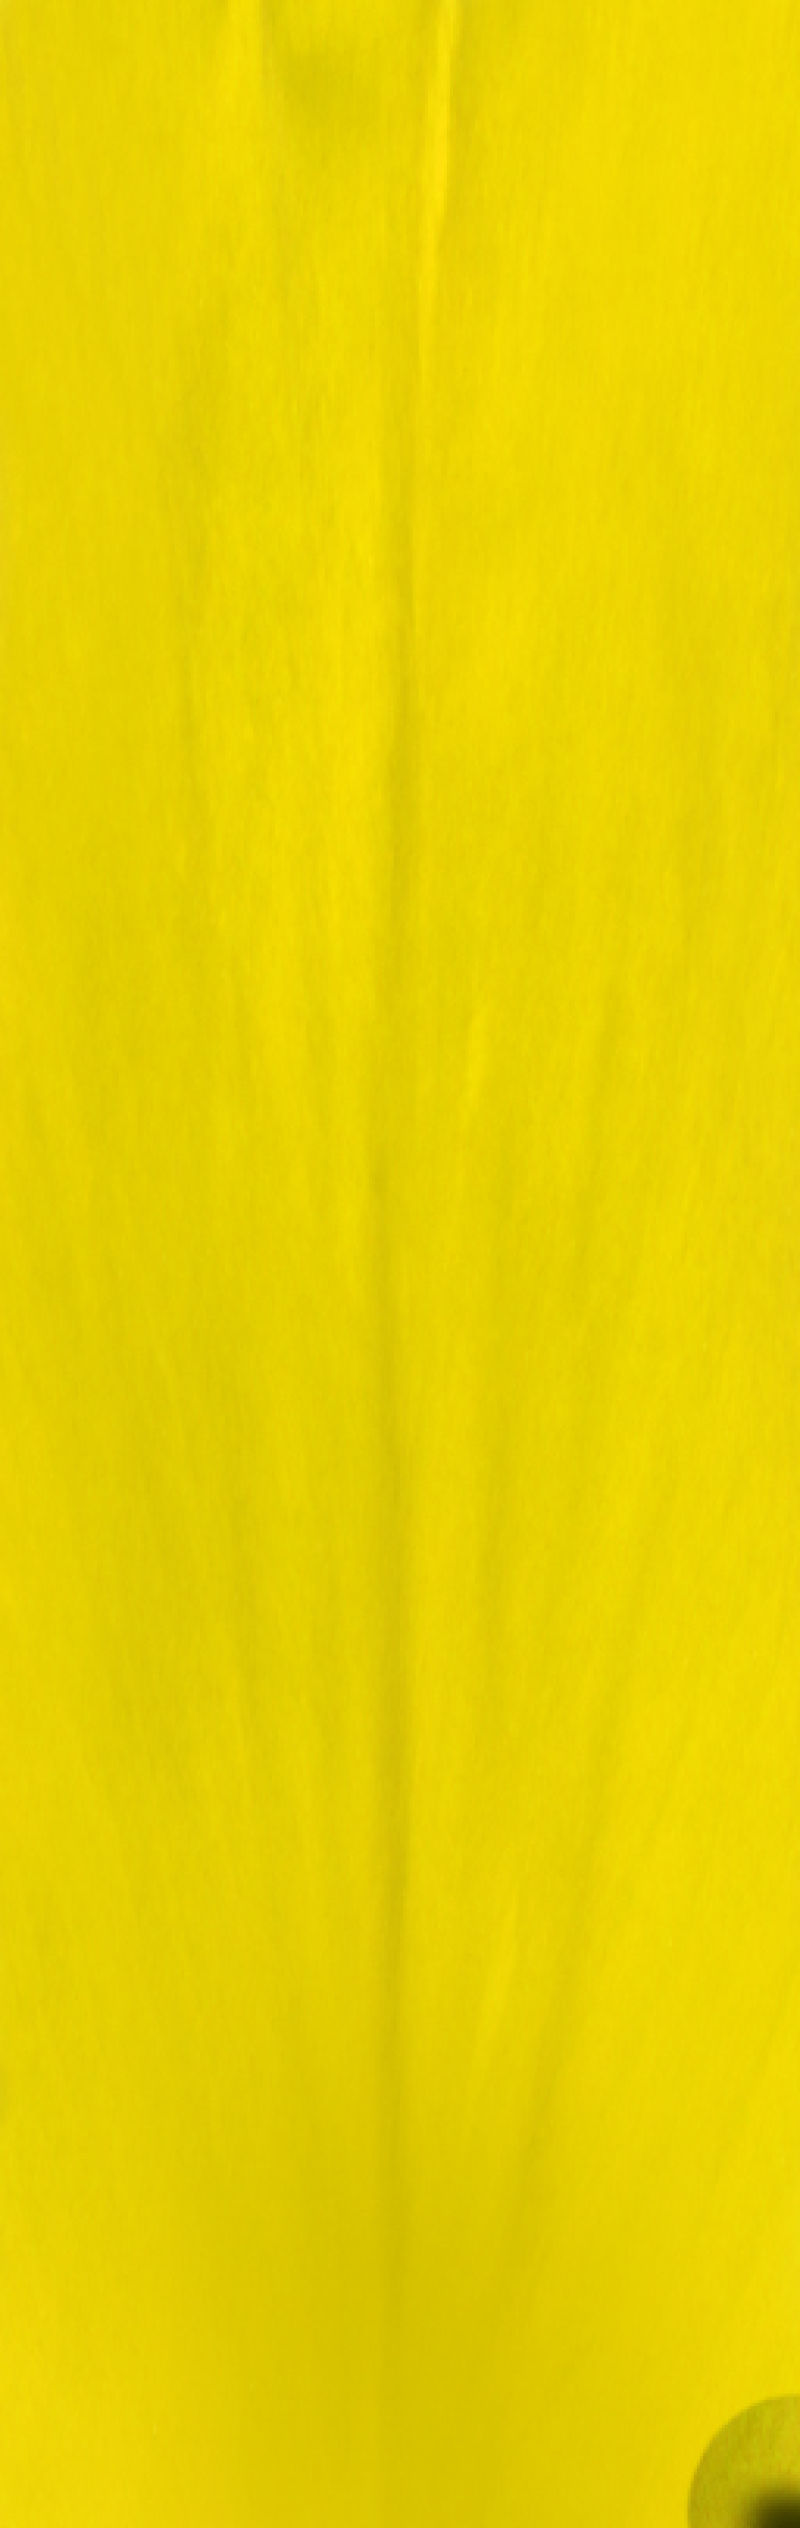 黄色抽象叶子纹理背景